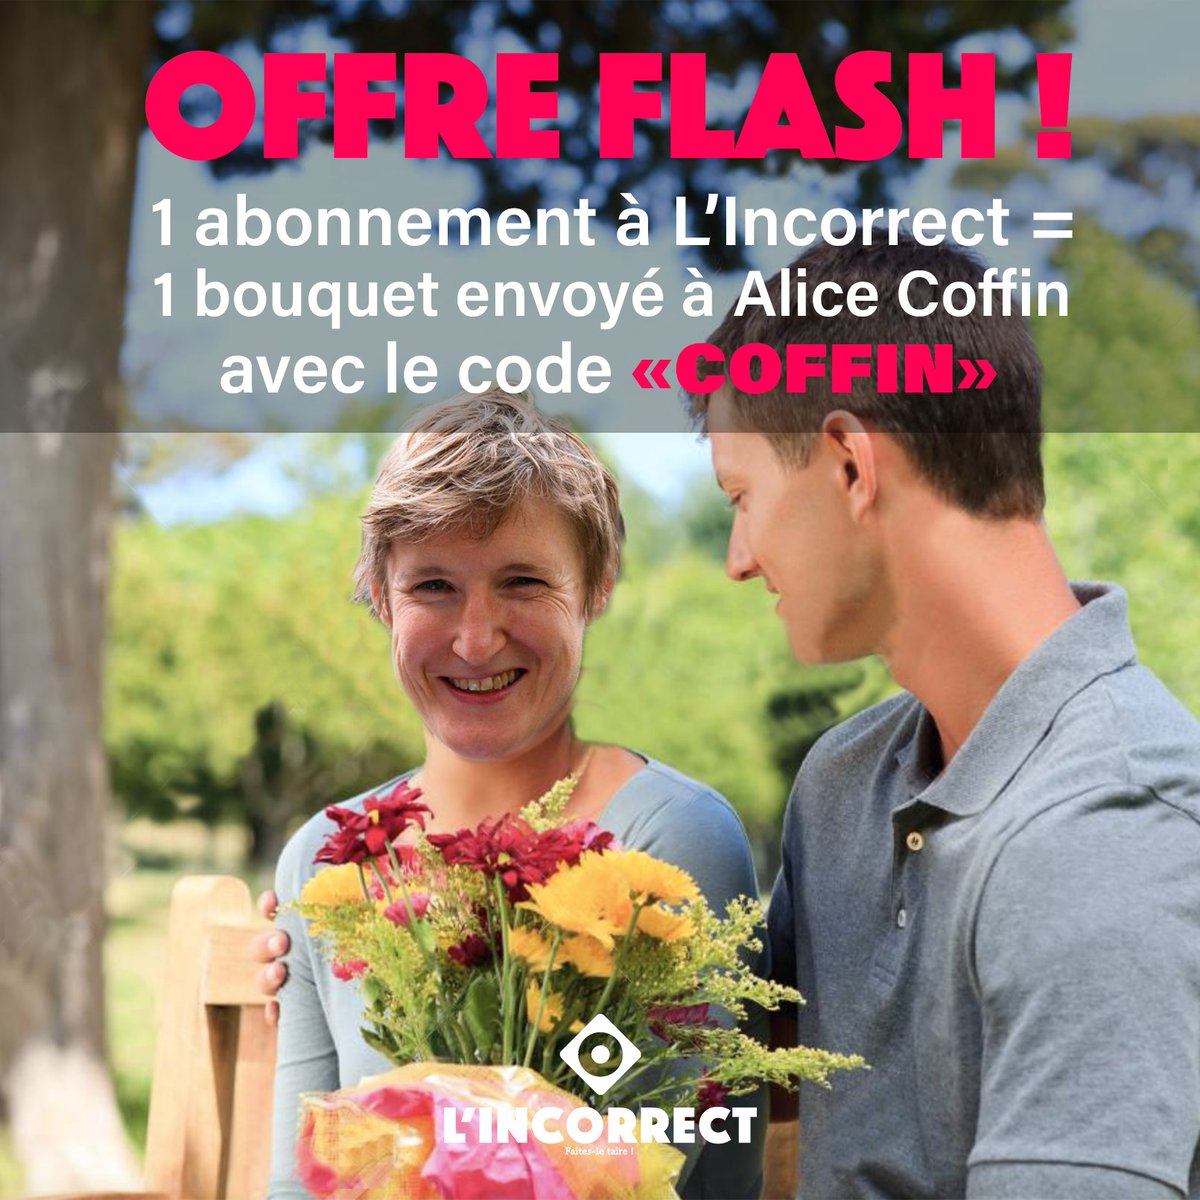 🔴❗OFFRE FLASH ❗🔴
Pour un abonnement à L'Incorrect nous enverrons un bouquet de fleurs à Alice Coffin 🌹
➡️ Avec le code « COFFIN » 

#AliceCoffin #offreflash #fleurs #amour